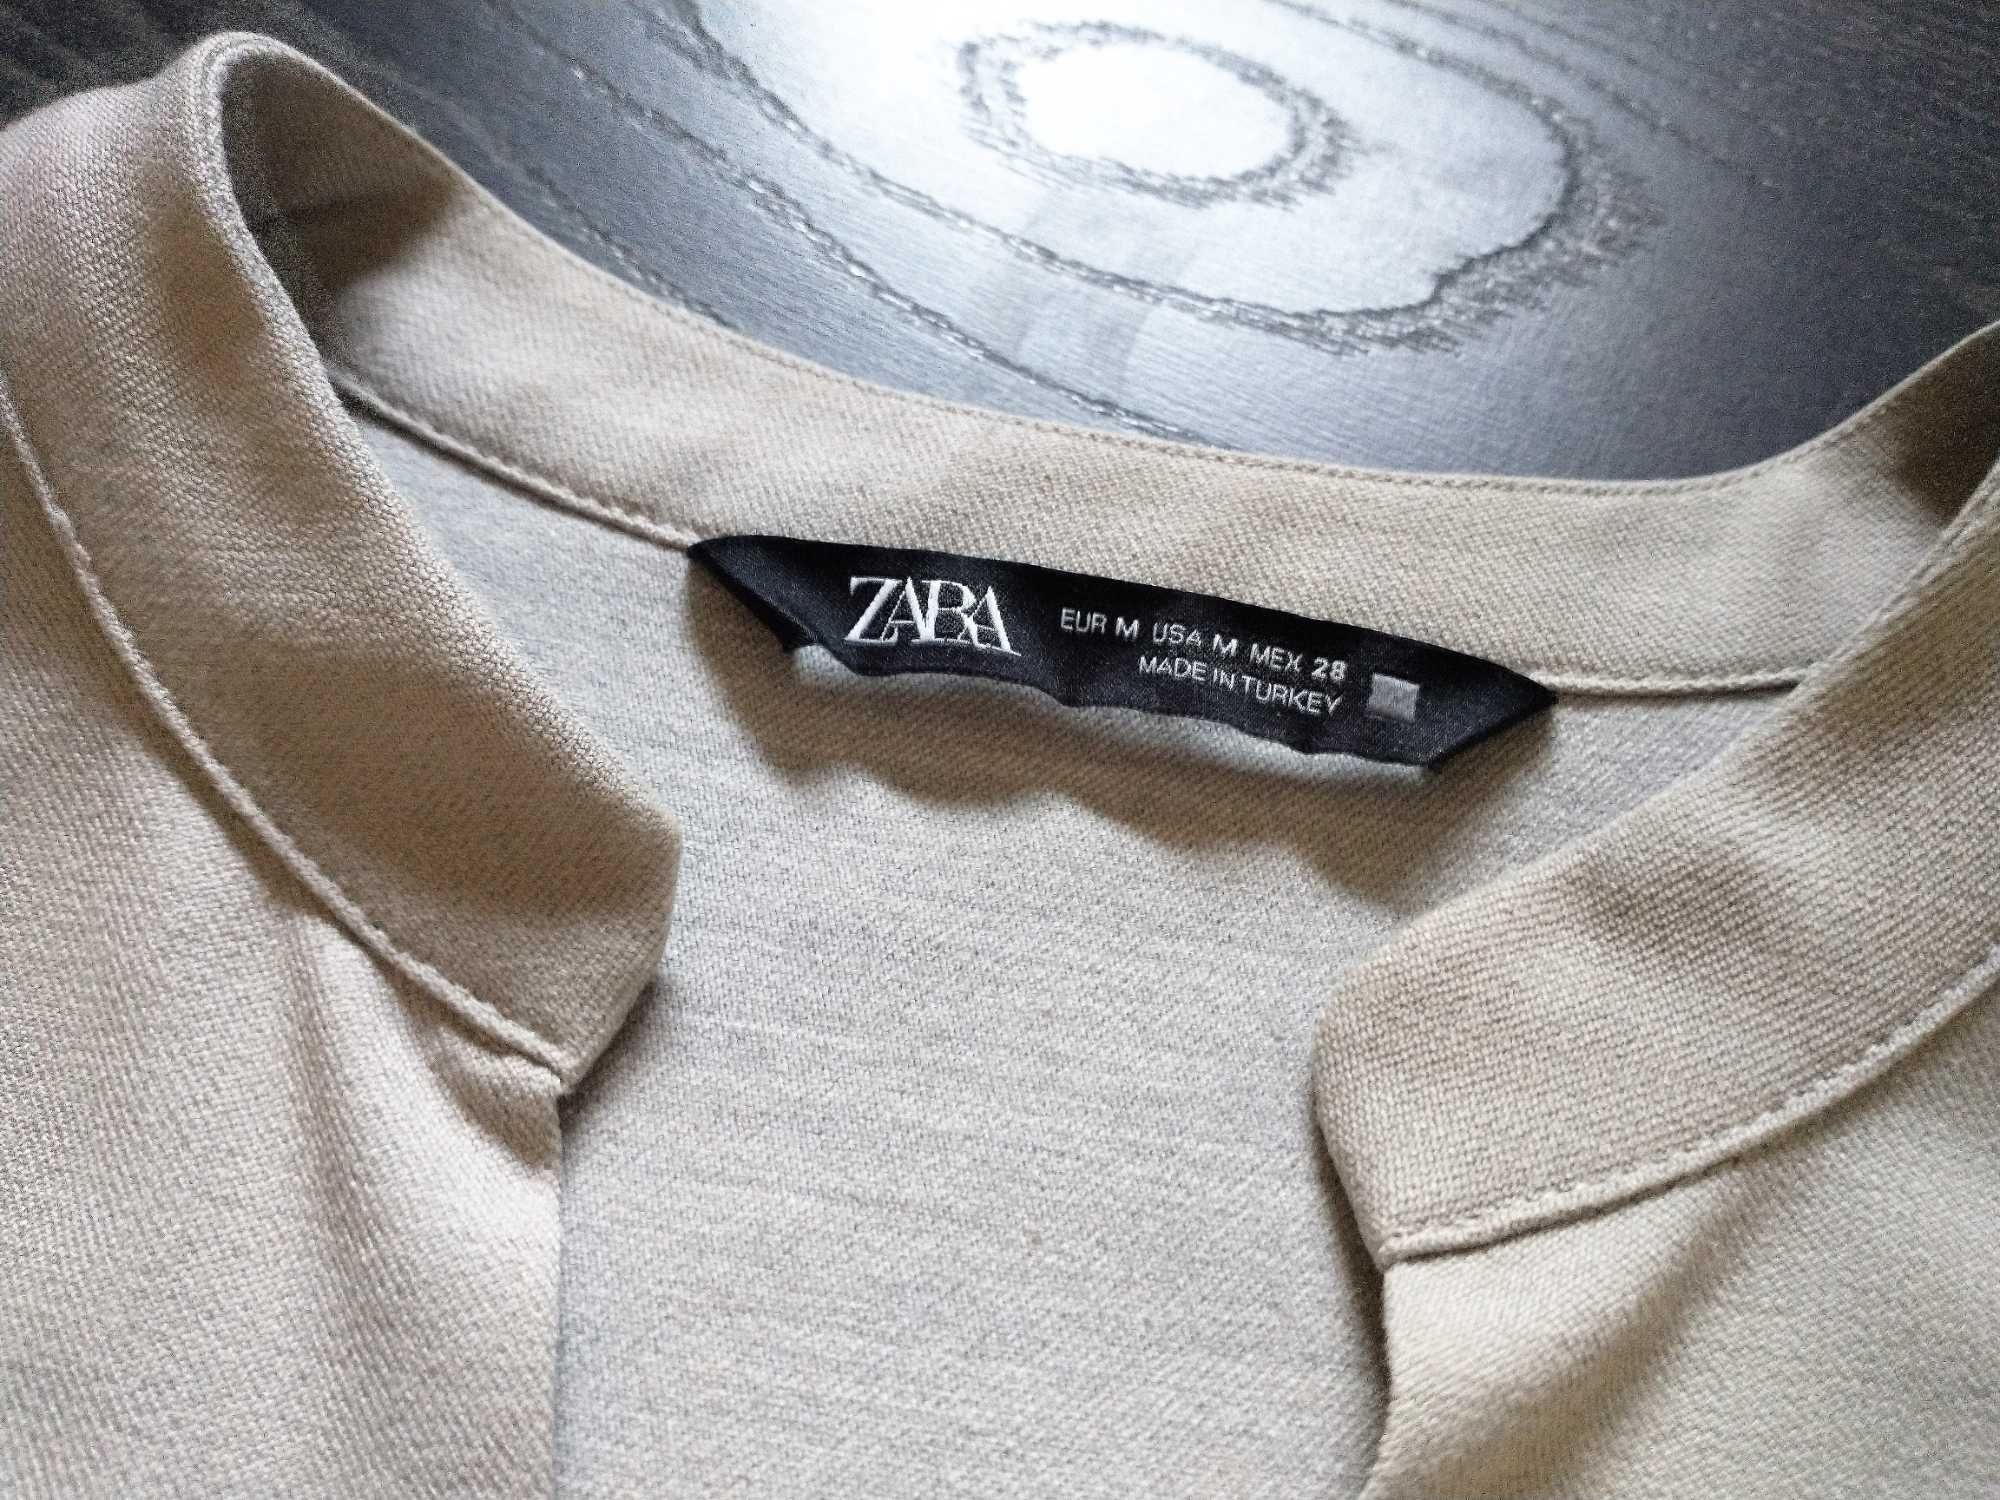 Zara tunika bluzka w stylu japońskim M nowa